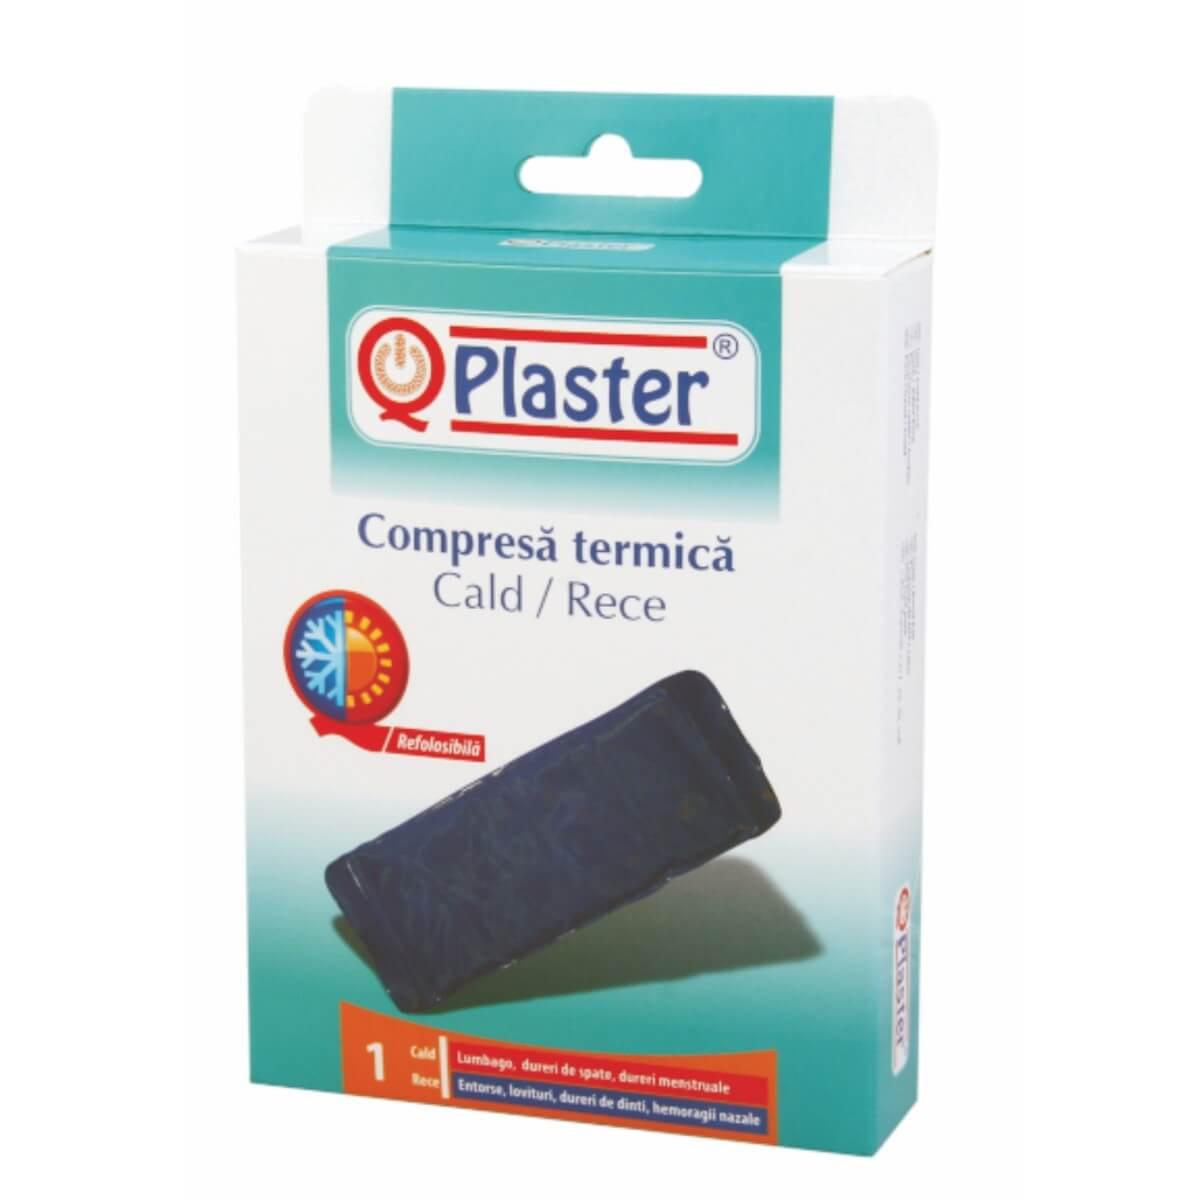 Compresa termica cald/rece QPlaster